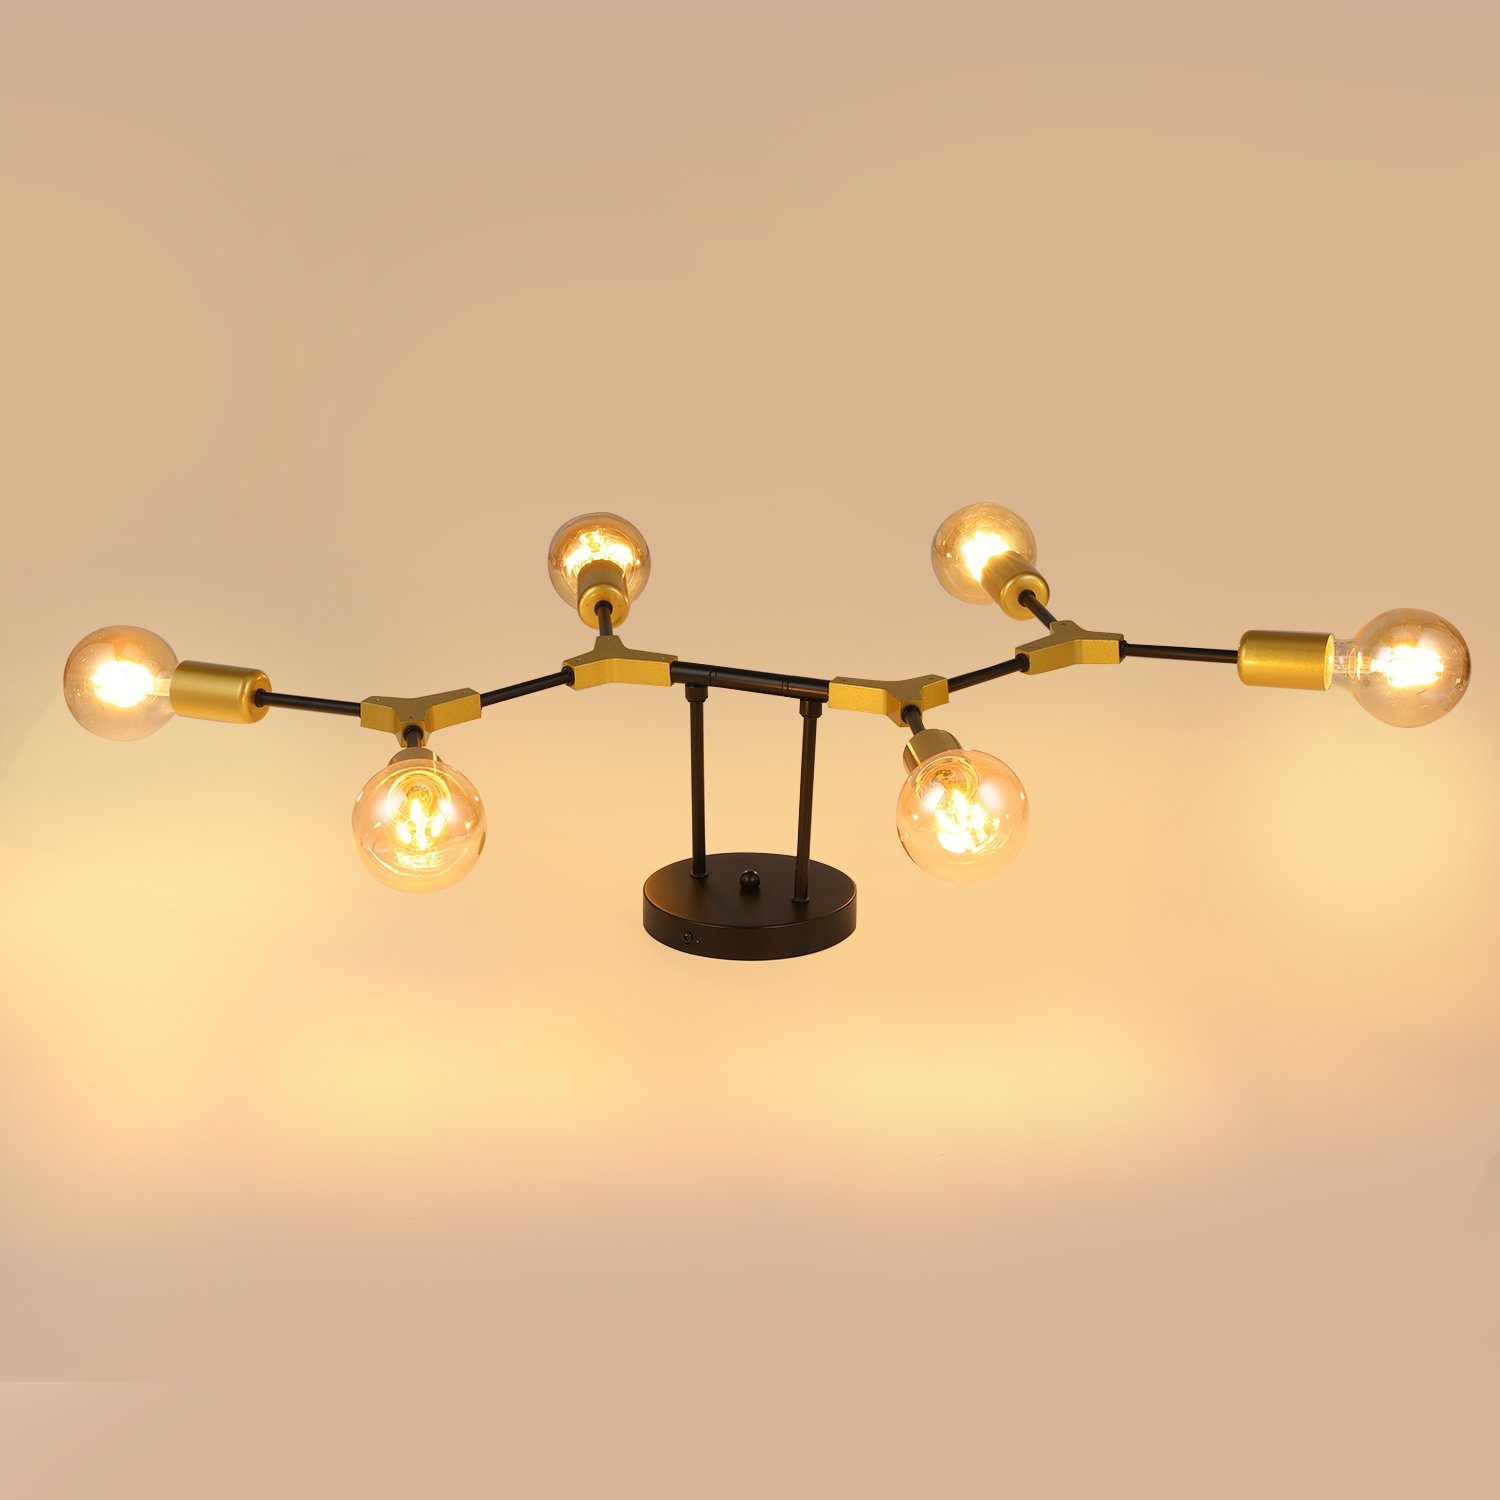 LETGOSPT Deckenlampe 6-flammige Sputnik-Kronleuchter Deckenleuchte Metall Glühbirne ohne Moderne E27